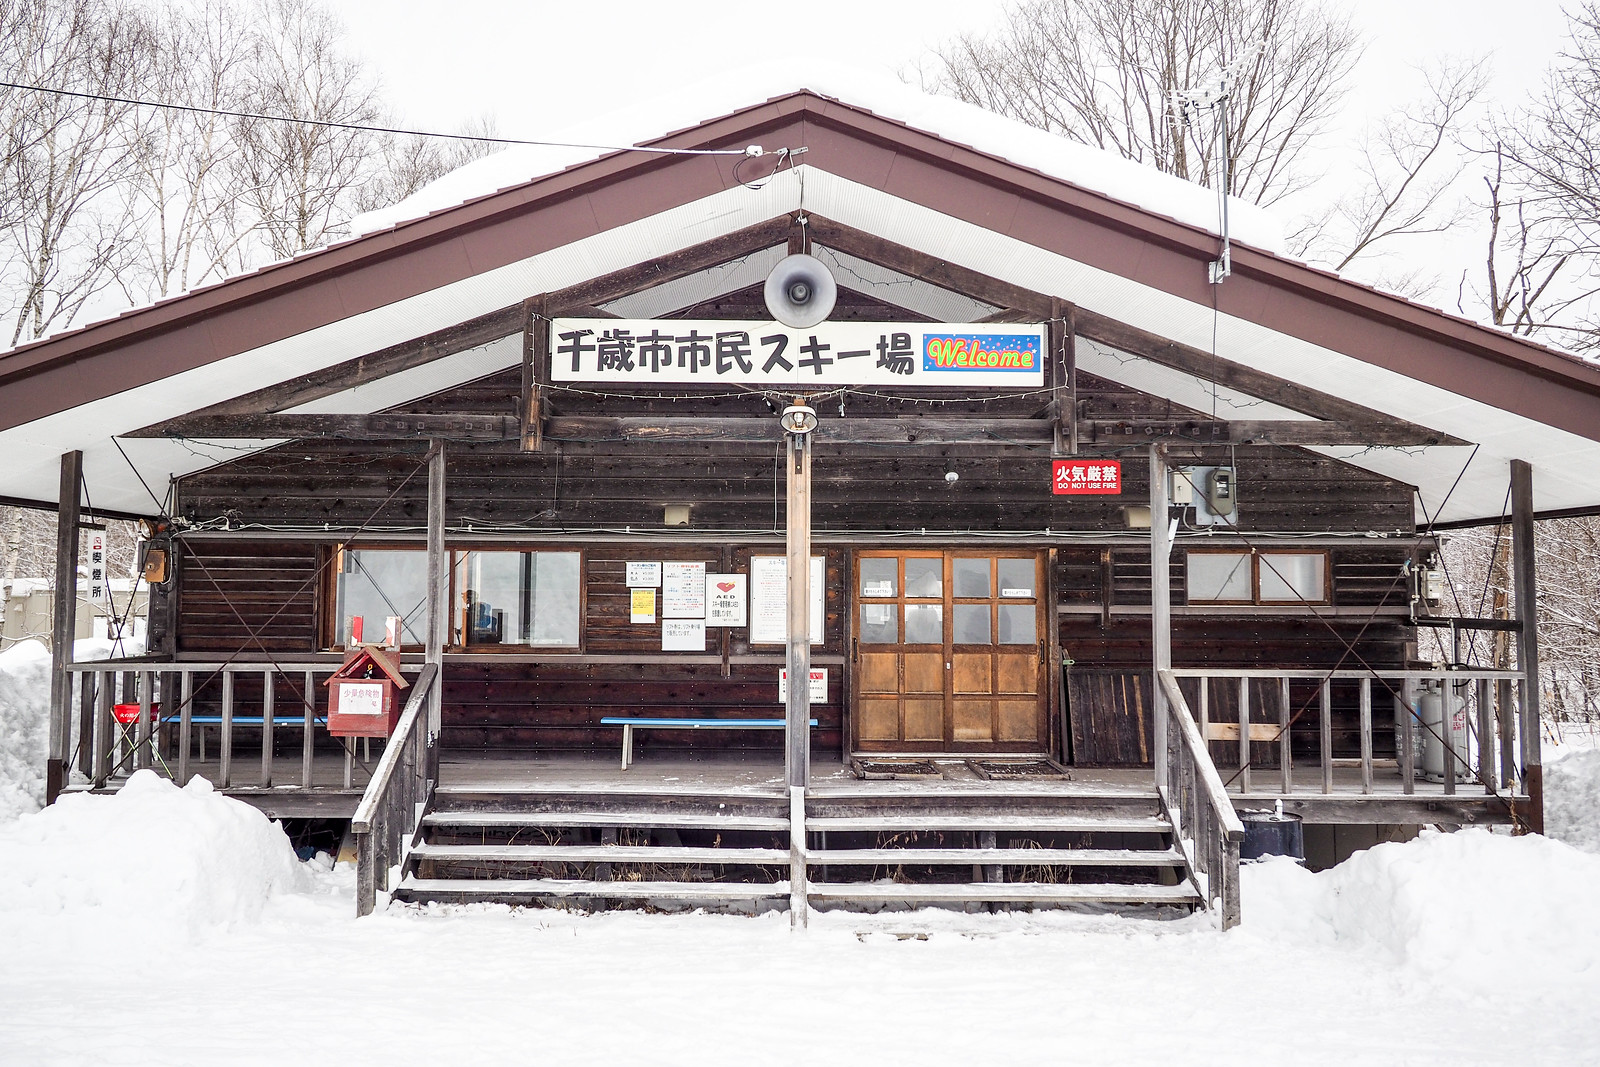 Chitose City Ski Slope (Hokkaido, Japan)